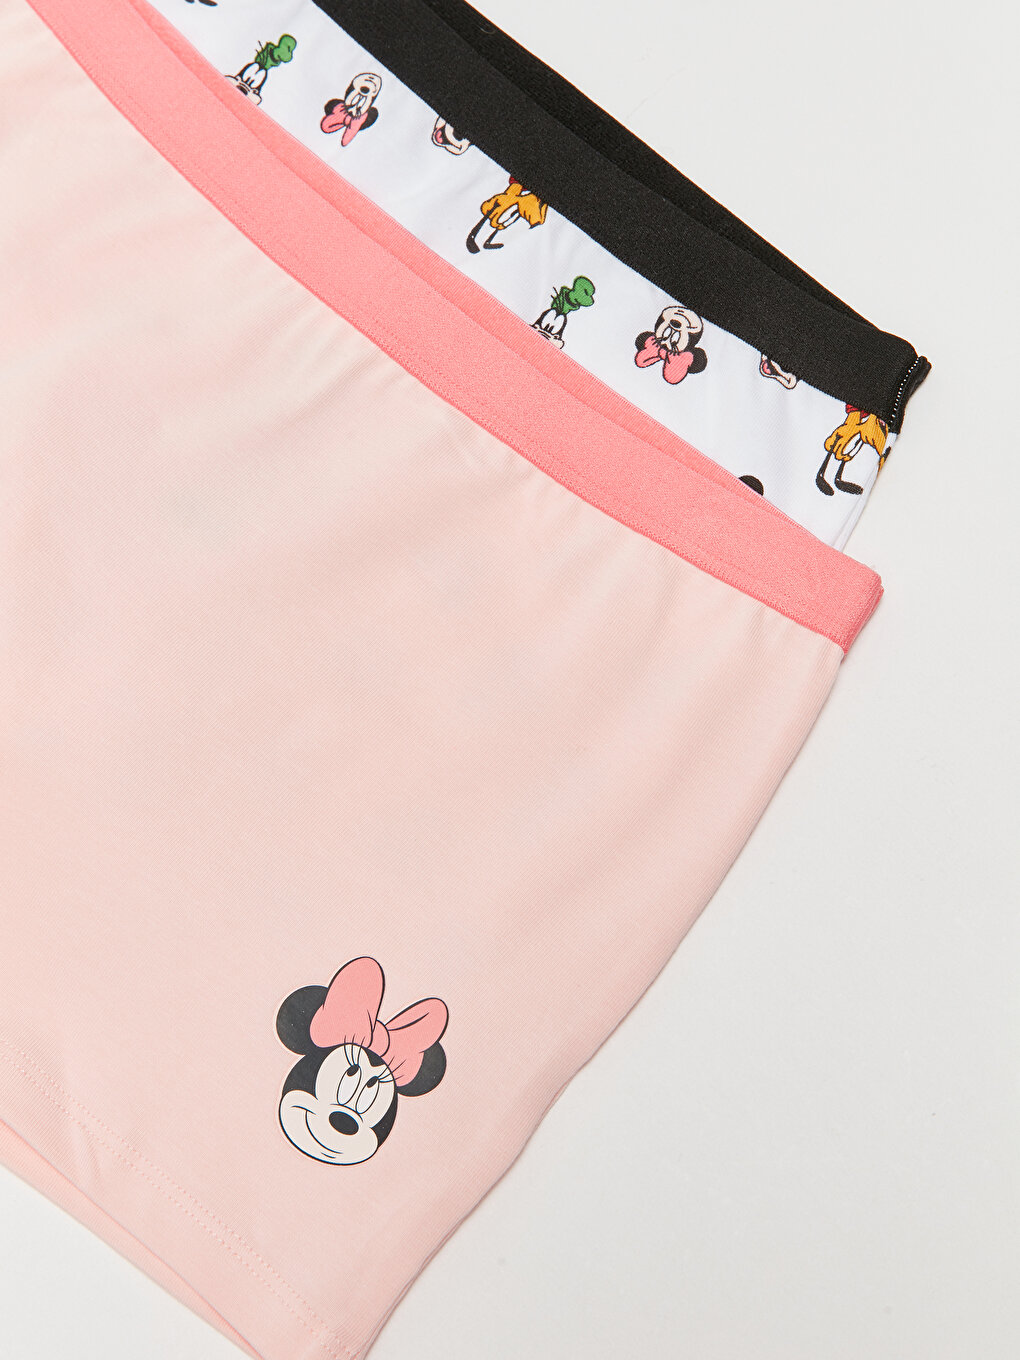 Minnie Mouse Briefs Girls Disney Minnie Mouse Shorties Underwear